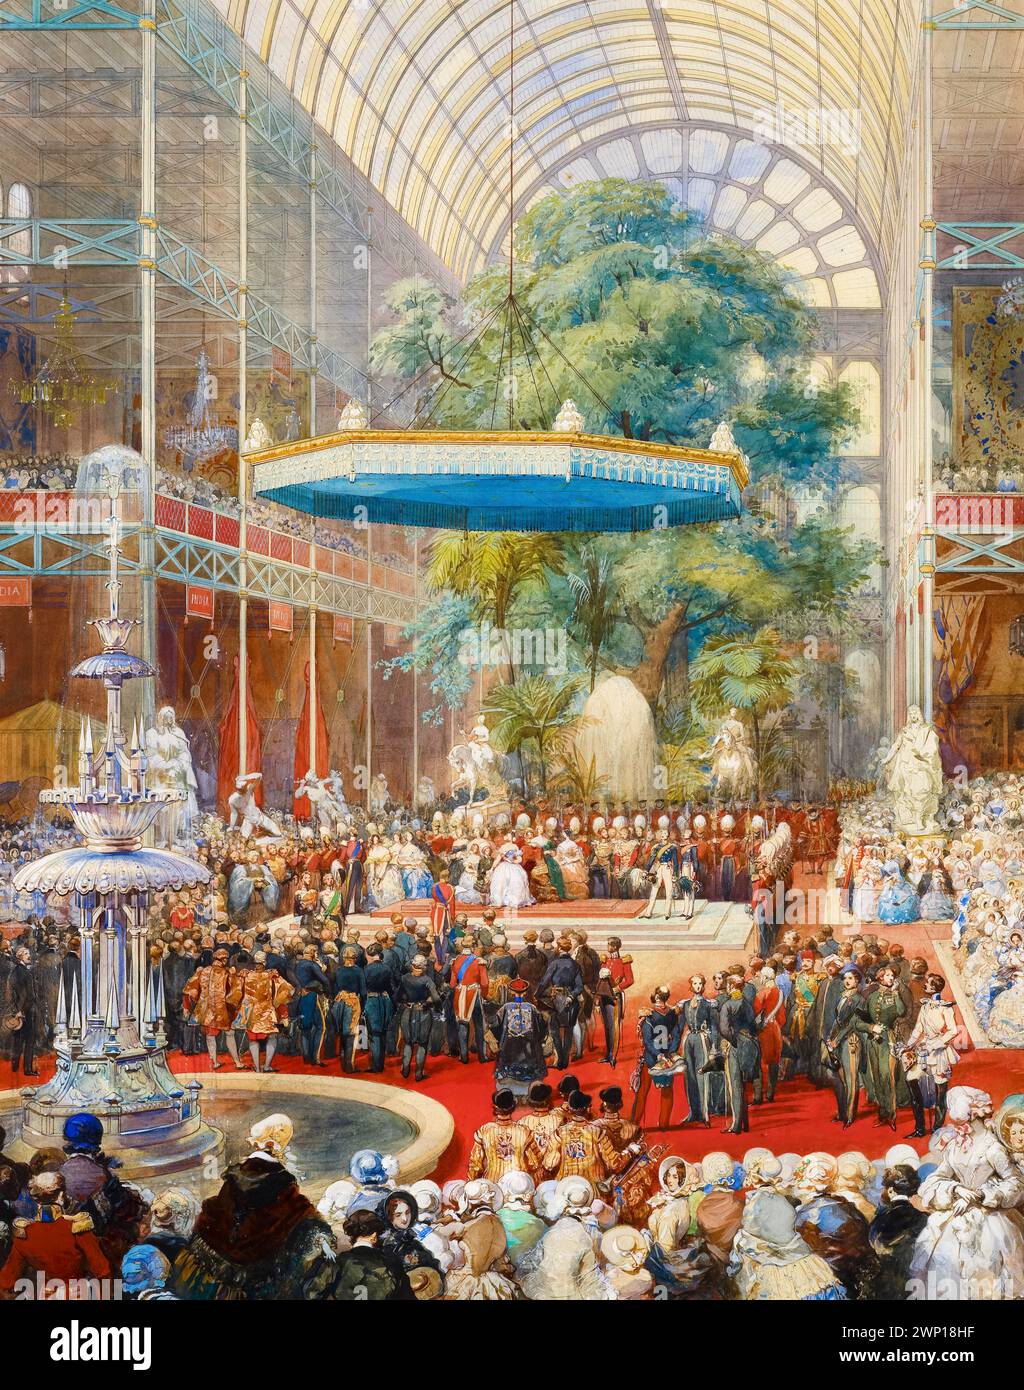 La reine Victoria et le Prince Albert inaugurent la Grande exposition 1851 lors de la cérémonie d'inauguration à l'intérieur du Crystal Palace, Londres, Angleterre. Aquarelle par Eugène Lami, 1854 Banque D'Images